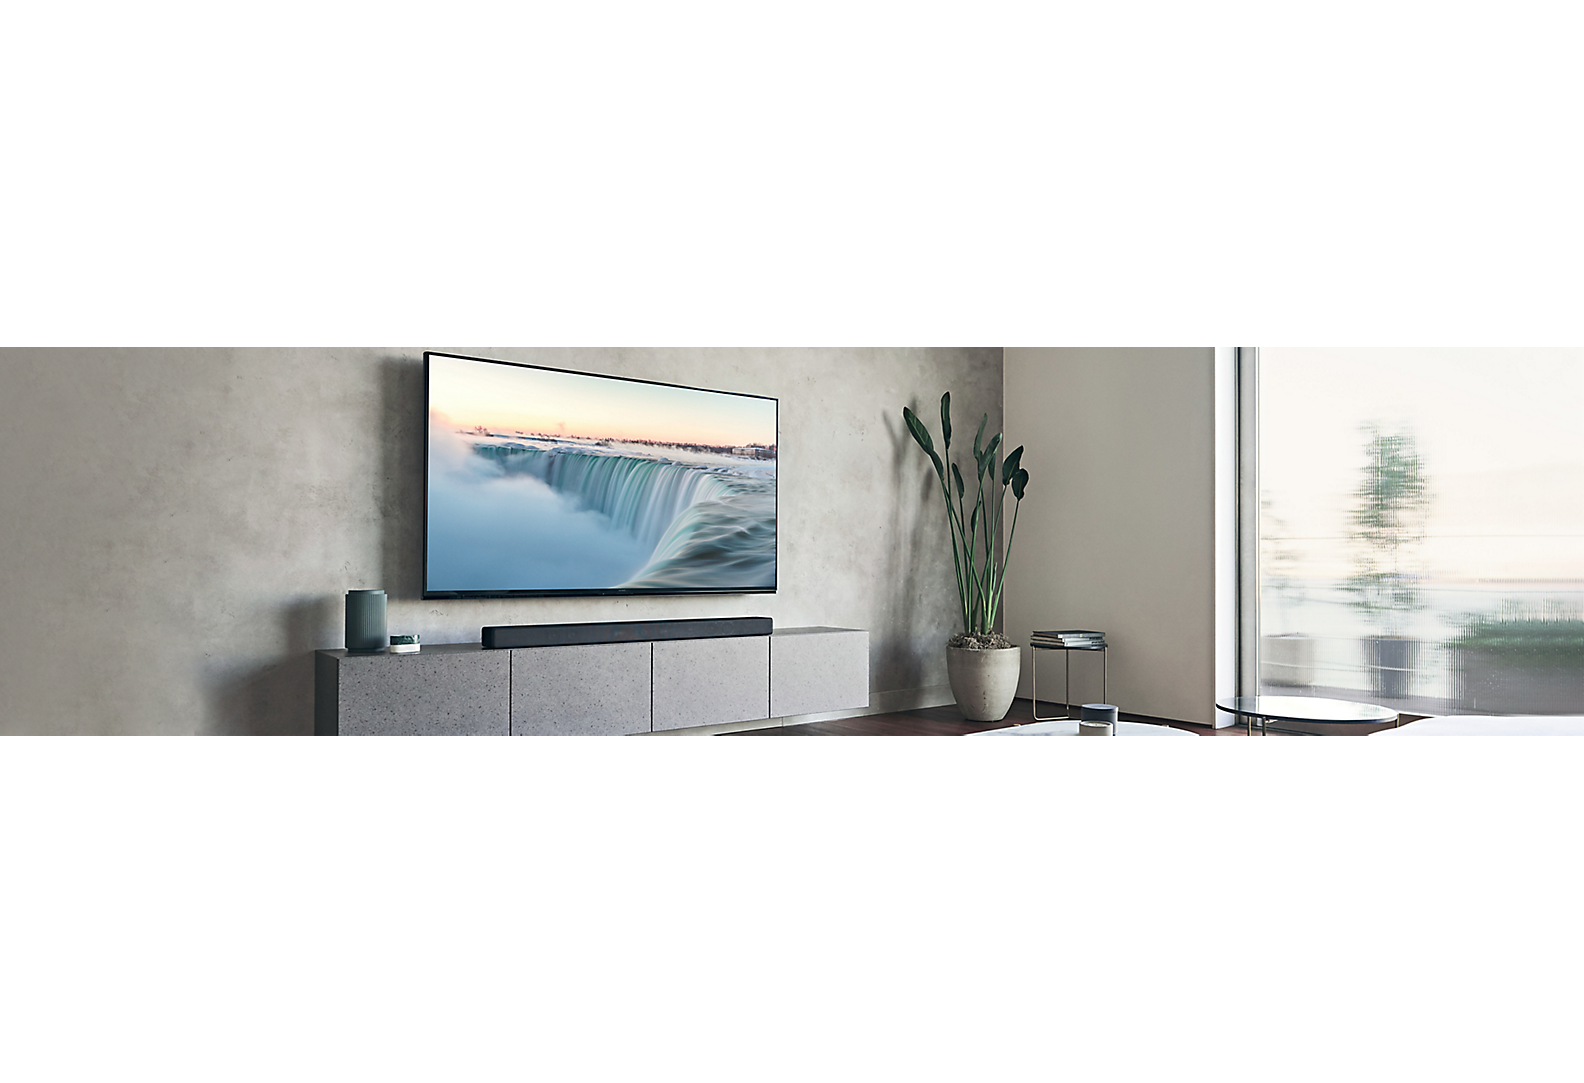 טלוויזיה שמורכבת על קיר אפור, בסלון בגווני אפור עם פרטי עיצוב שונים.